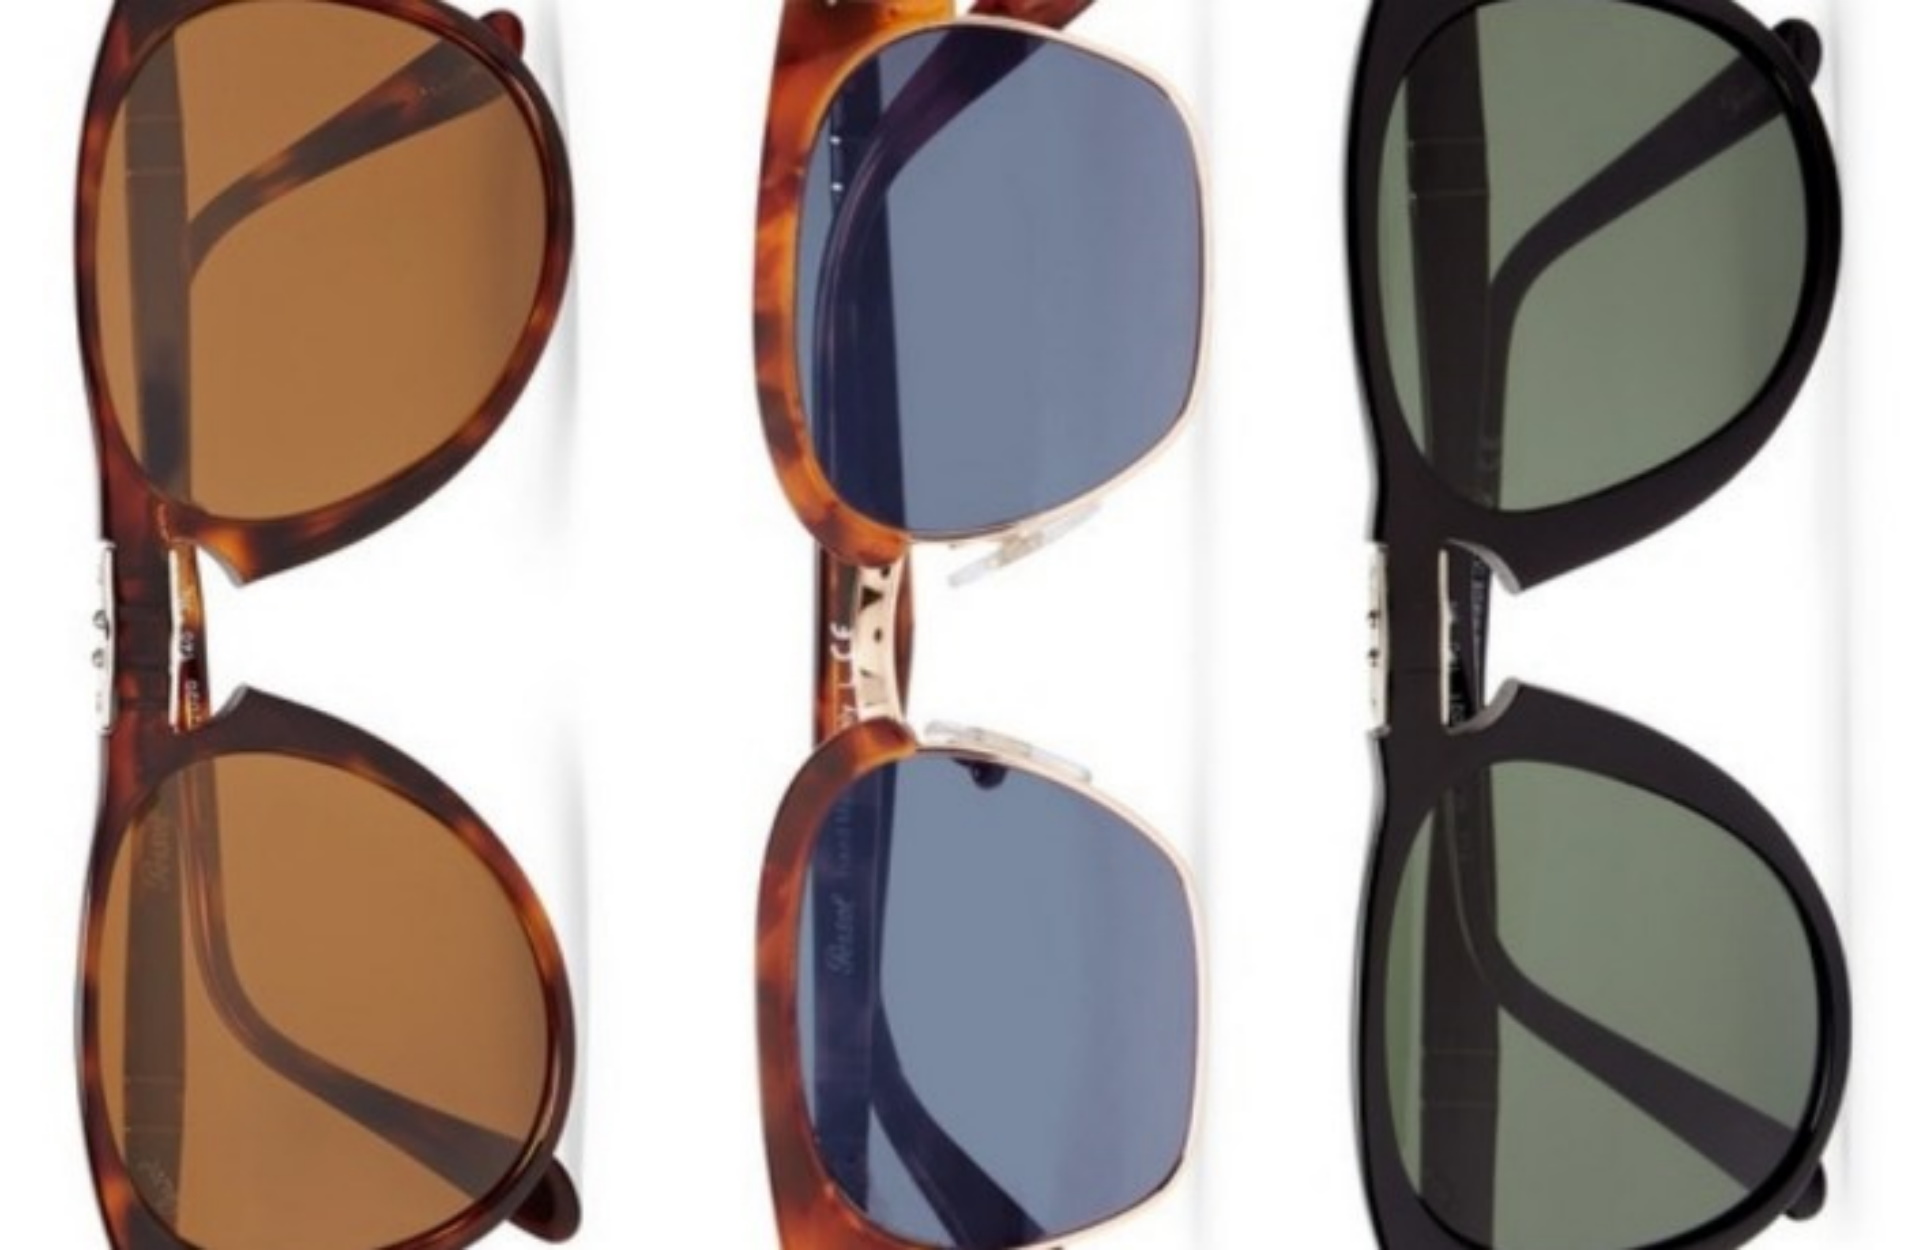 Τρία ζευγάρια γυαλιά ηλίου Persol που θα χρειαστείτε αυτή την σεζόν